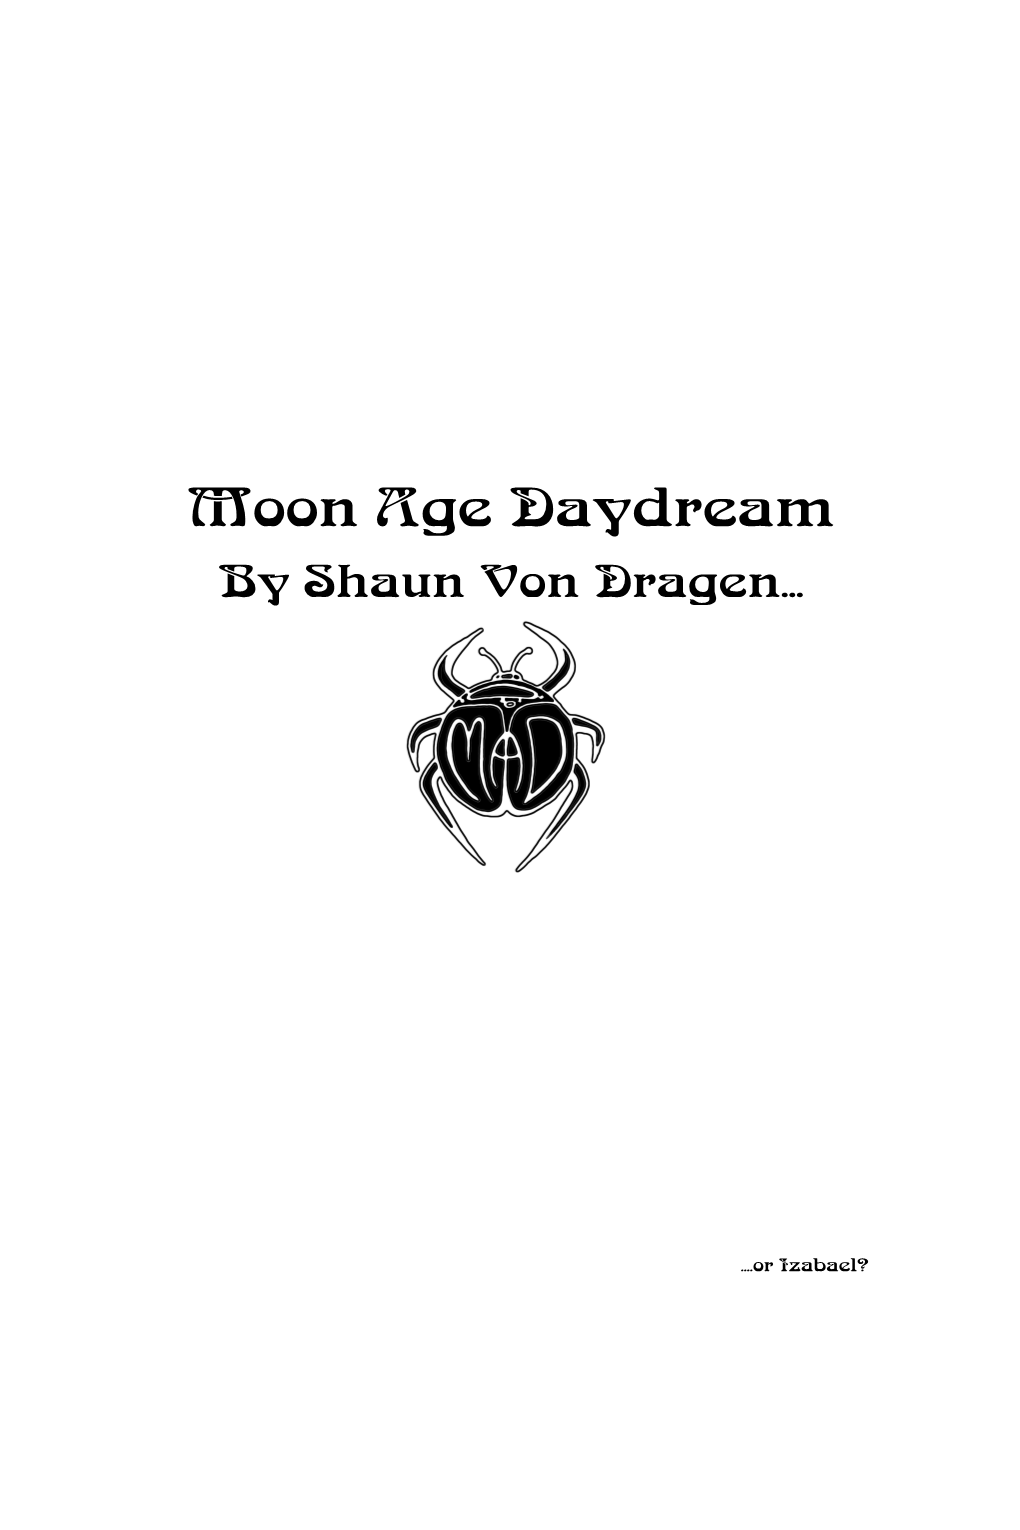 Moon Age Daydream by Shaun Von Dragen